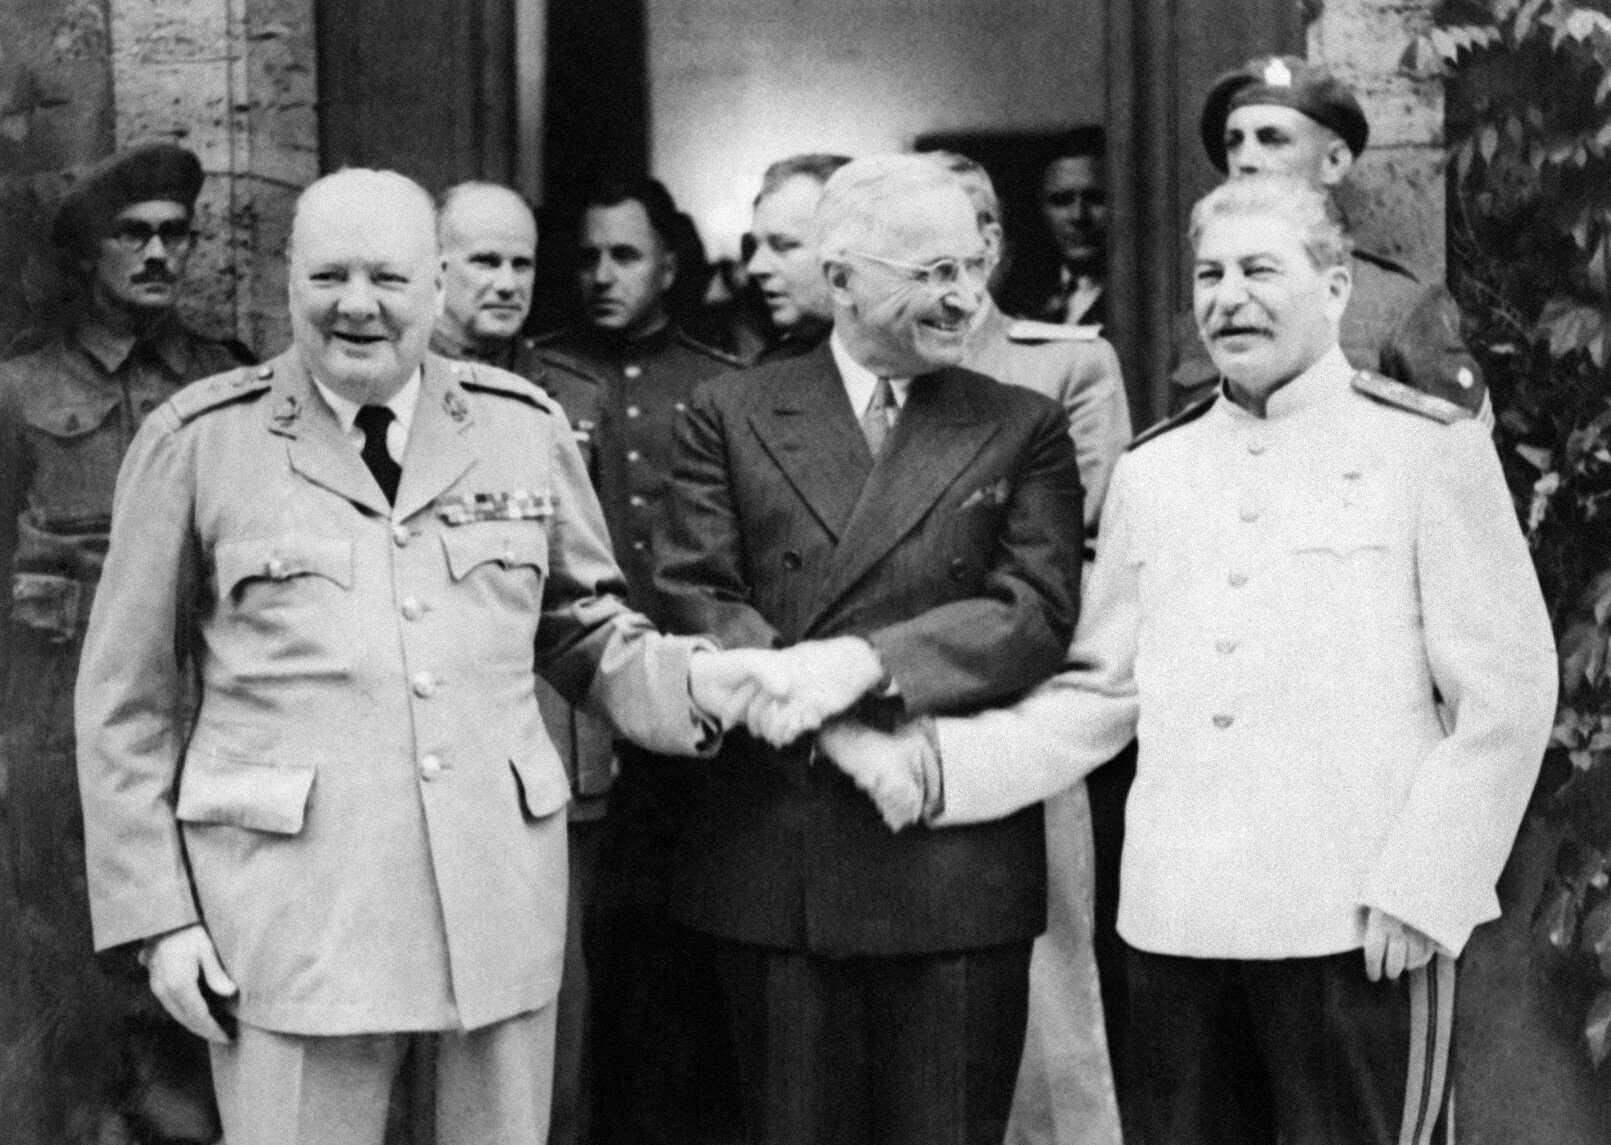 ผู้นำฝ่ายสัมพันธมิตร จากซ้ายไปขวา วินสตัน เชอร์ชิลล์, แฮร์รี ทรูแมน และ โจเซฟ สตาลิน จับมือกัน ที่การประชุมพอตส์ดัม ในเยอรมนี เมื่อวันที่ 28 ก.ค. 1945